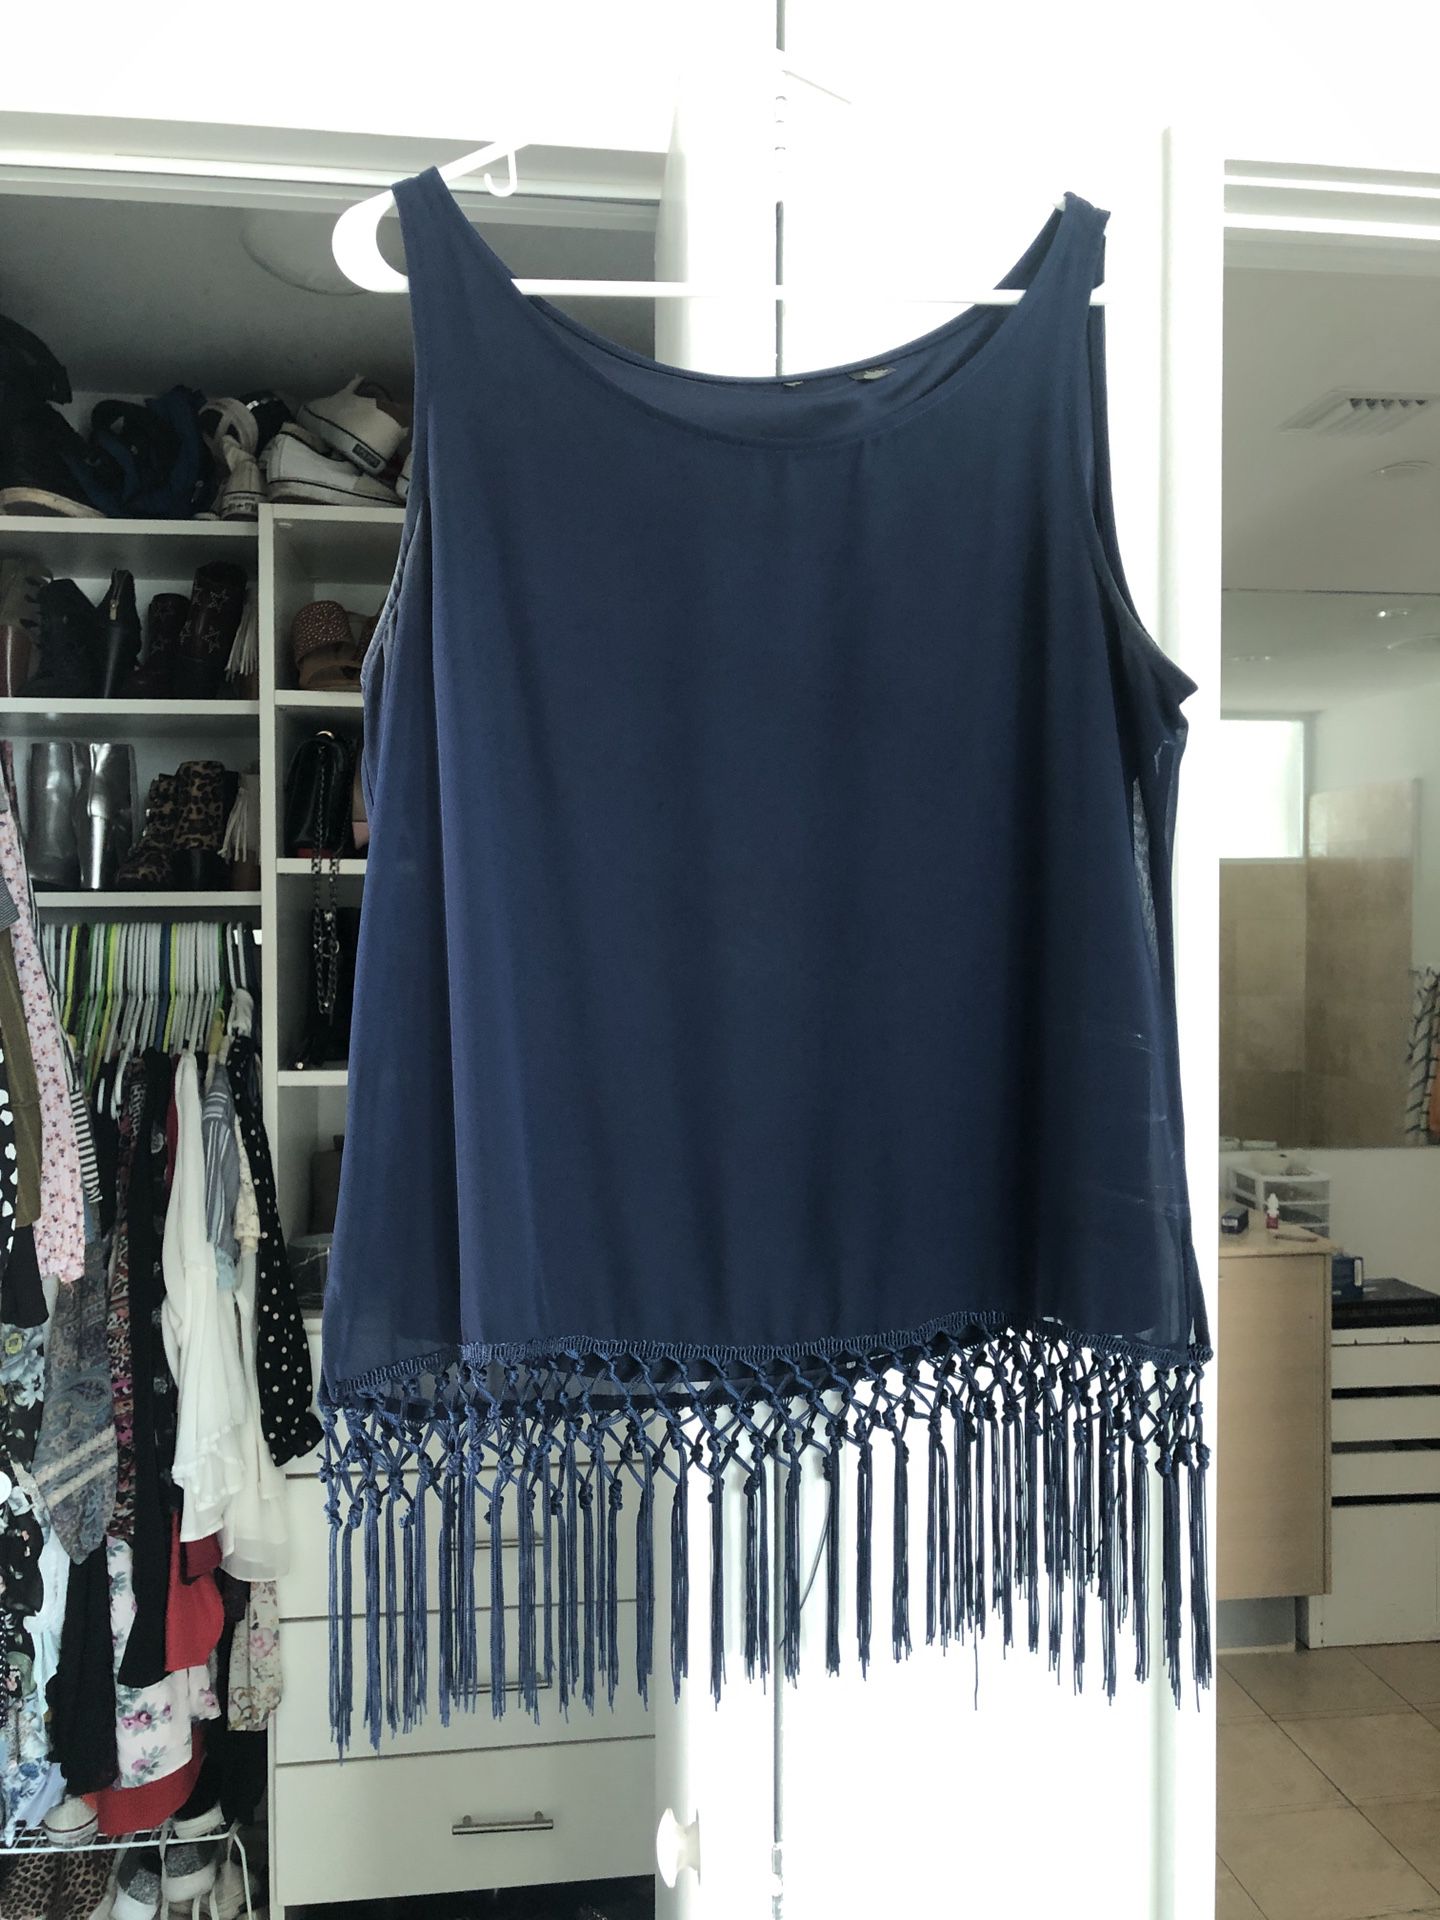 Fringe blouse size large